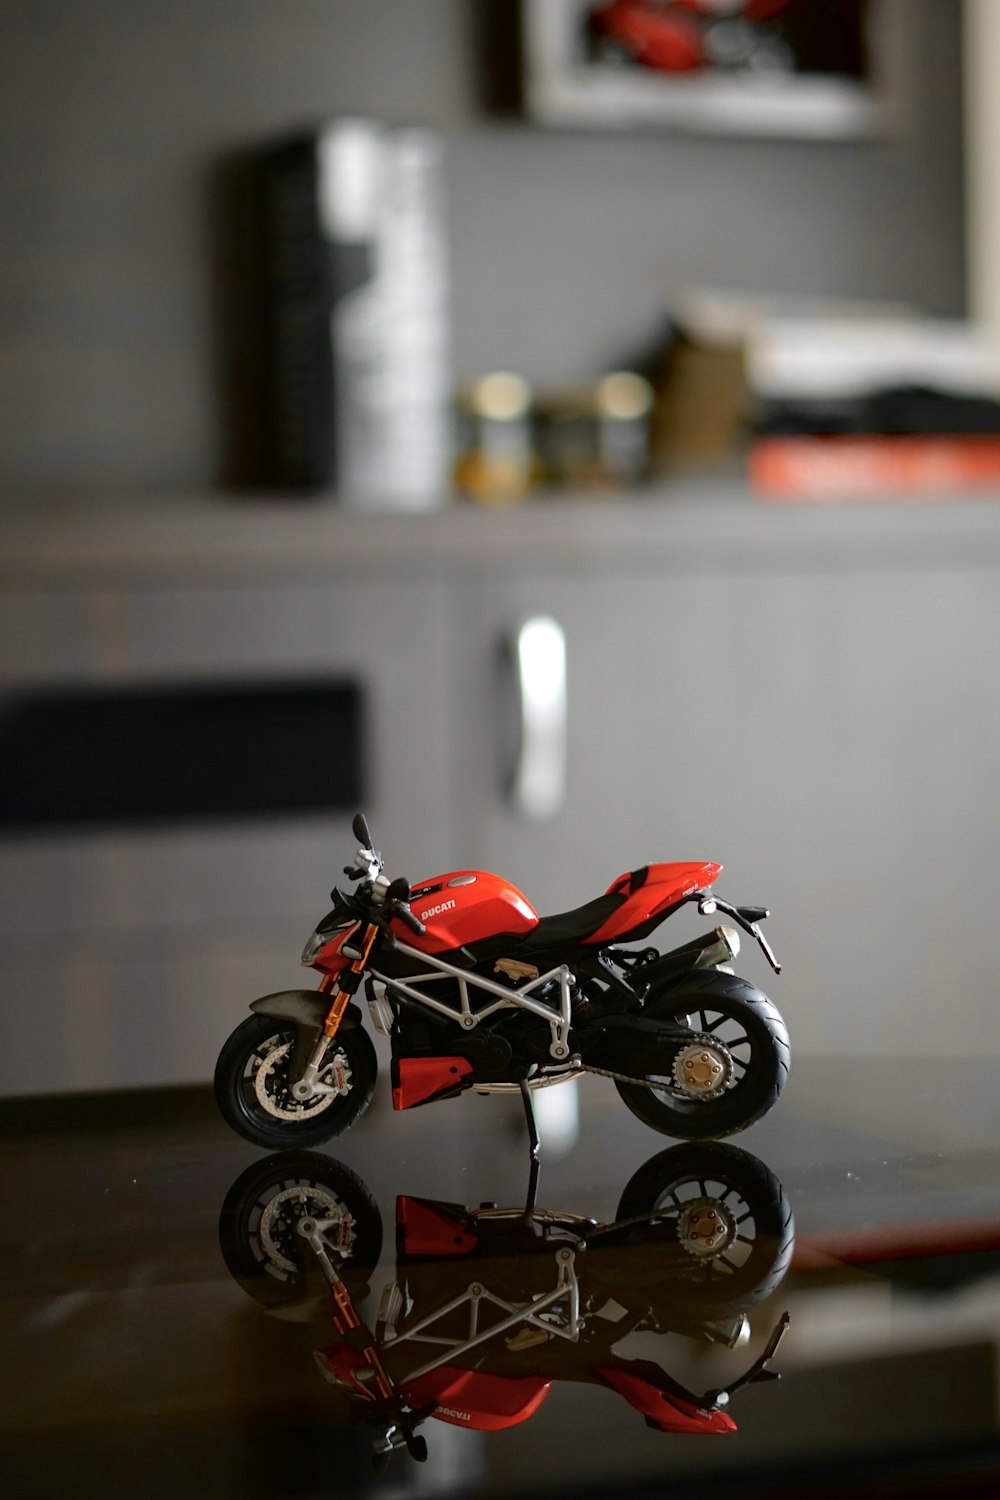 Maqueta de motocicleta roja y negra